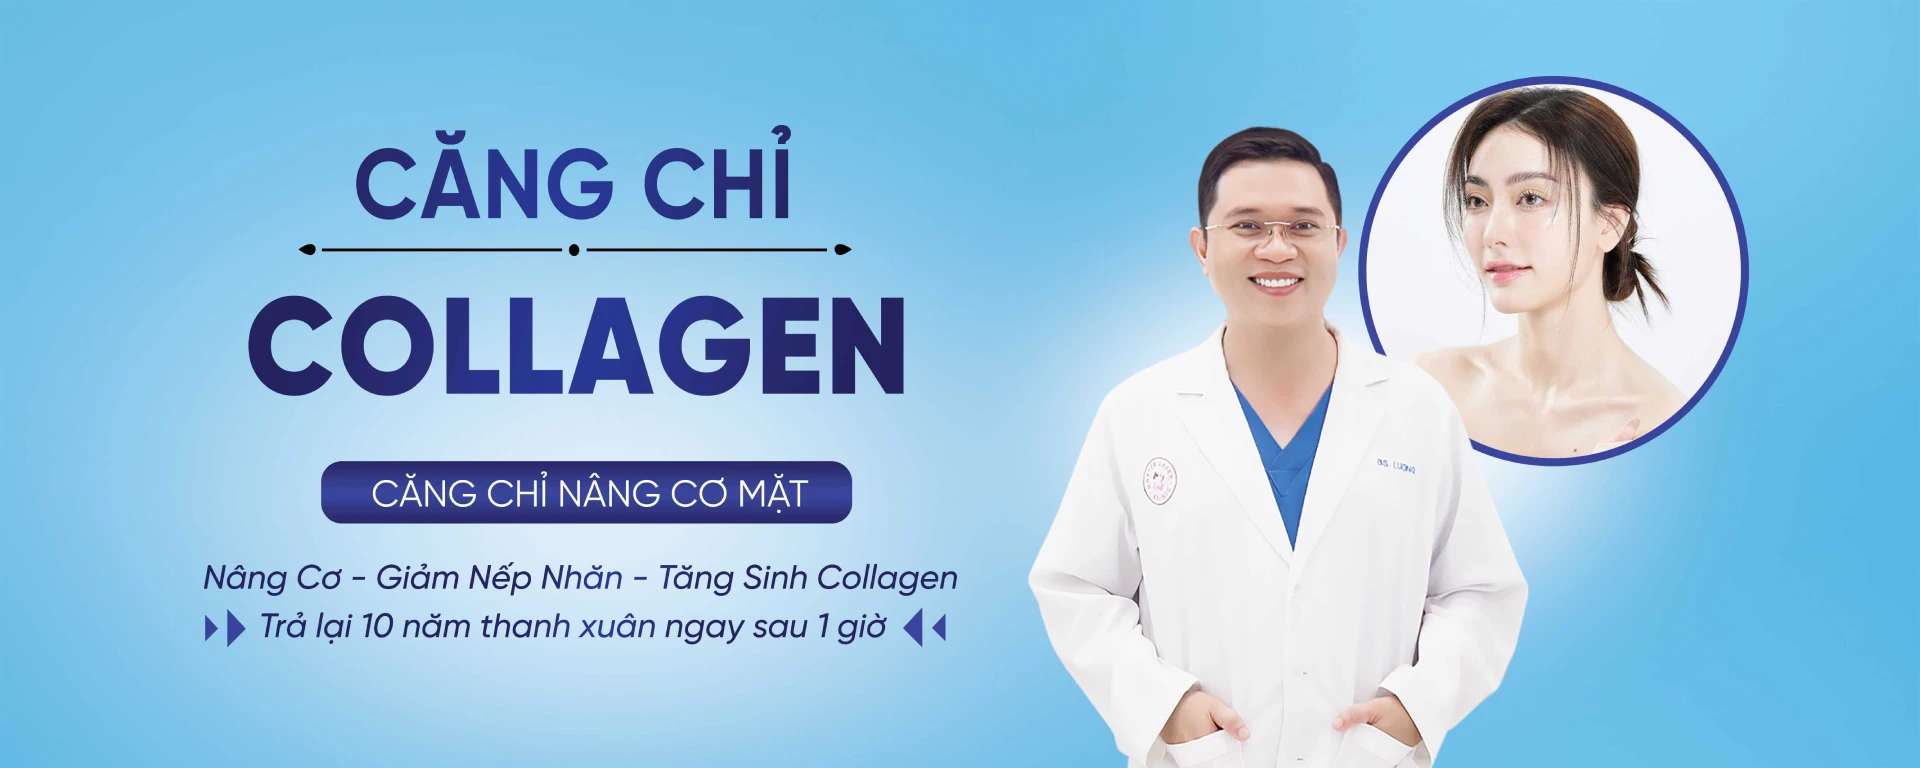 Căng chỉ collagen Bác sĩ Lương